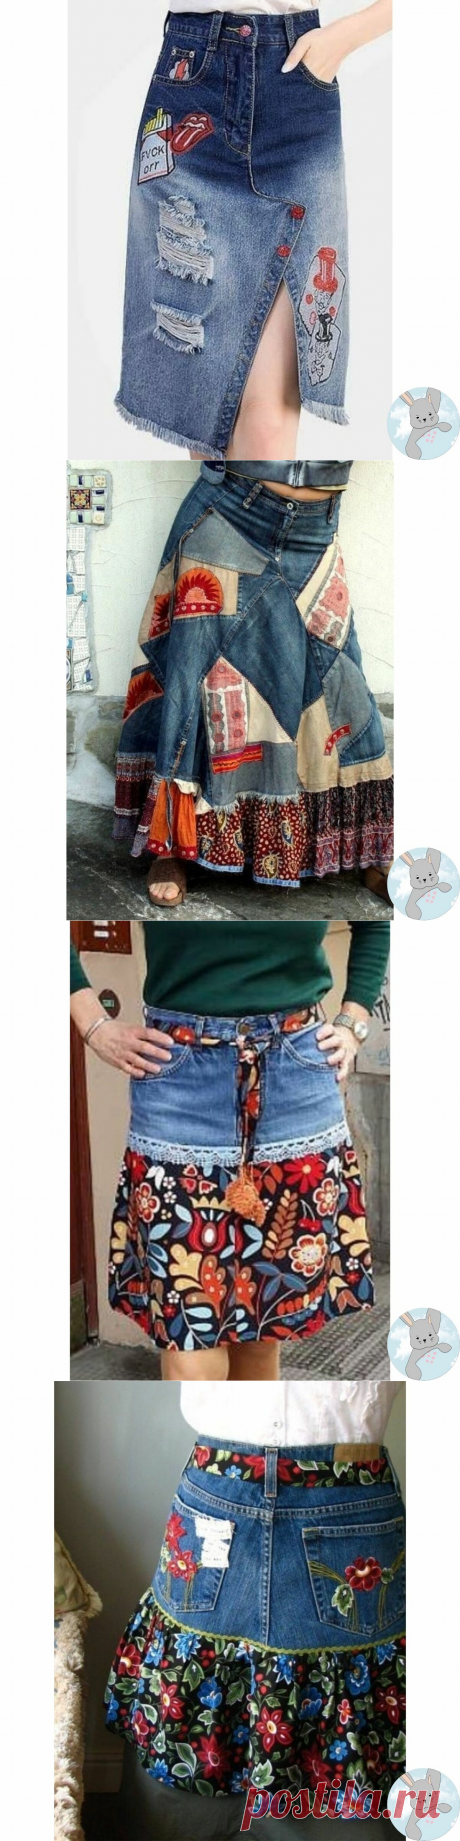 10 идей, как переделать старую и ненужную джинсовую одежду в приличные вещи, — взяла на заметку | Творческие будни | Яндекс Дзен